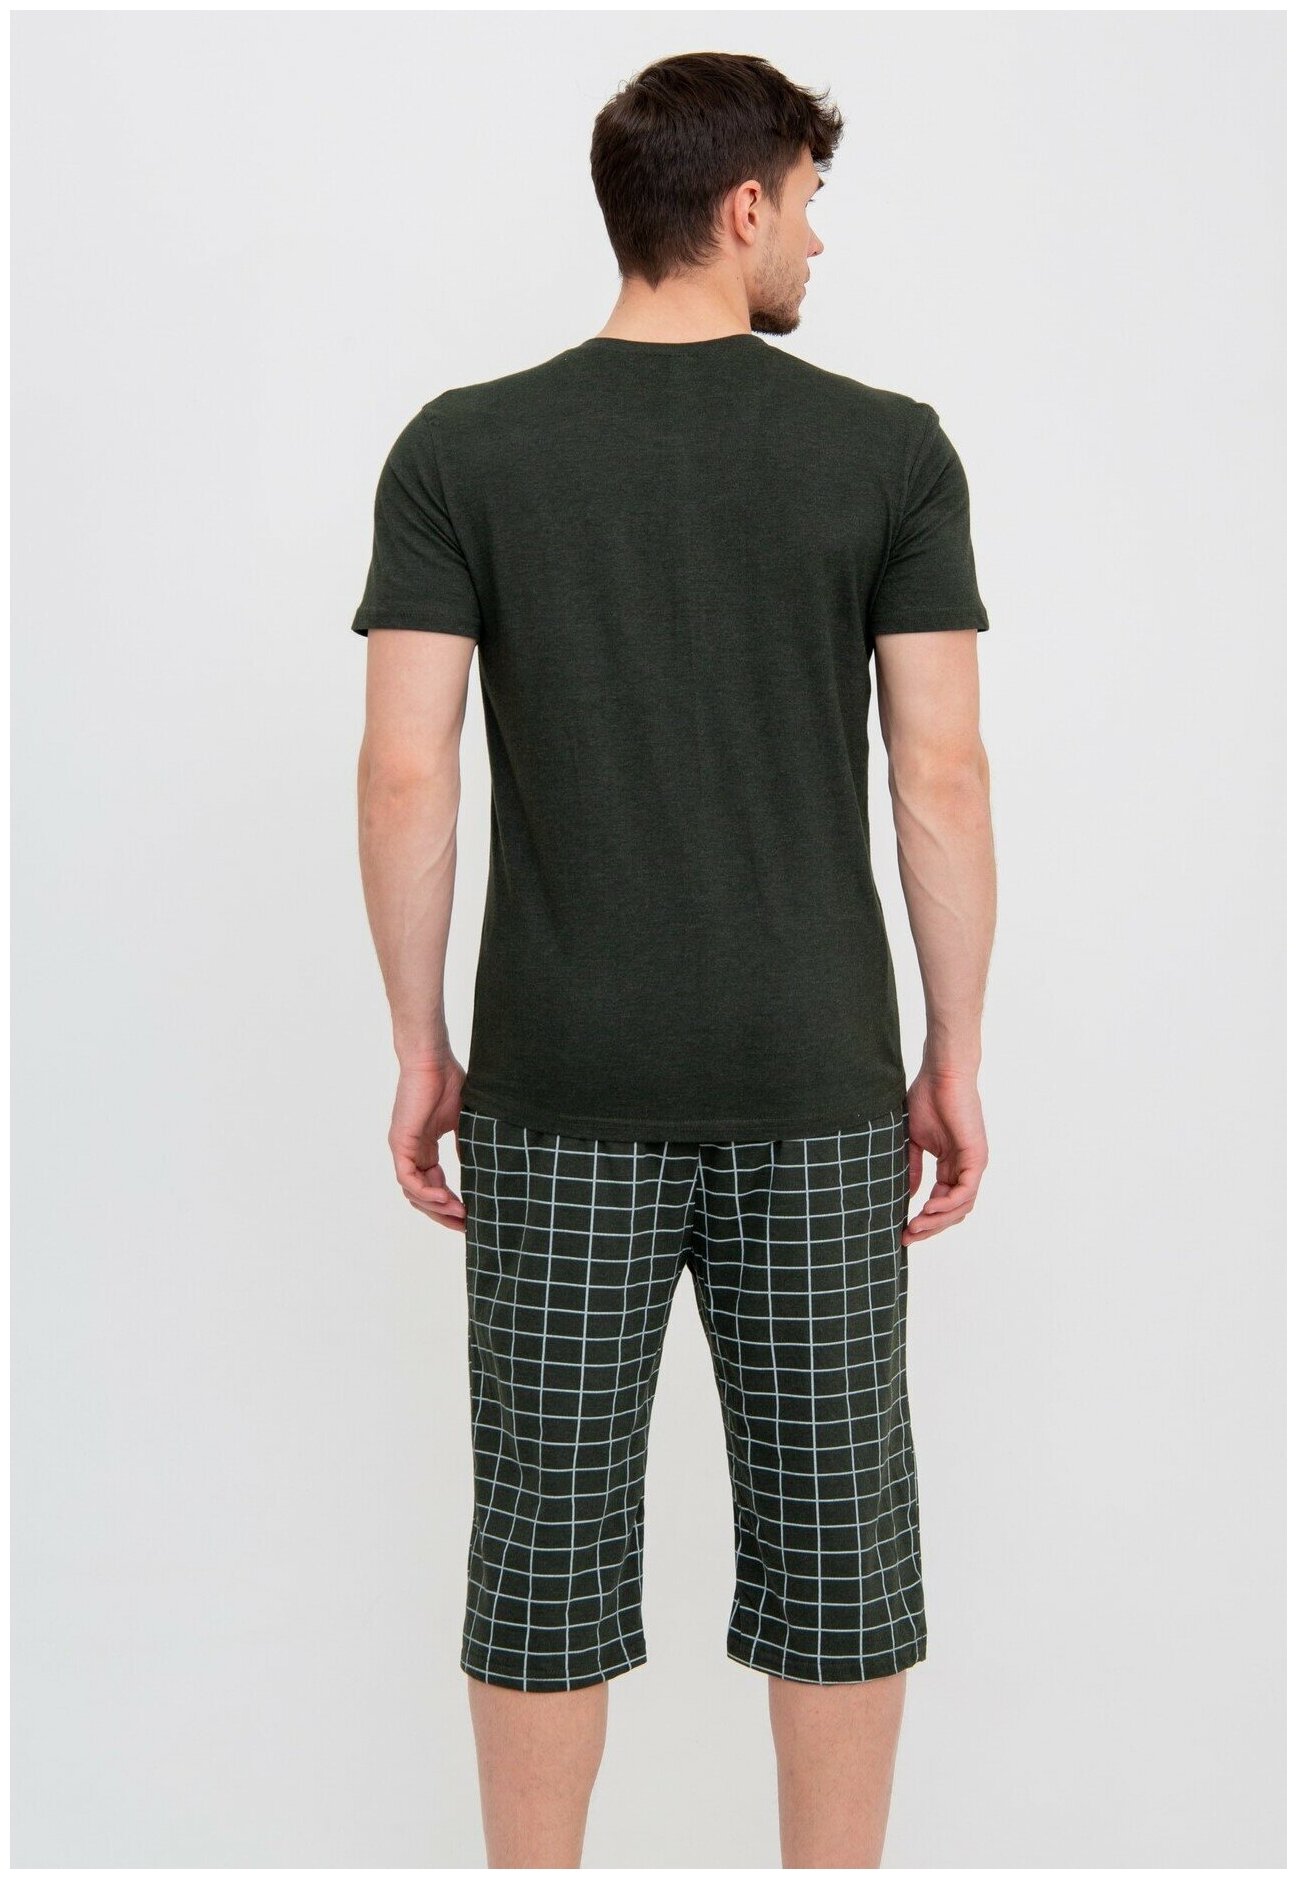 Костюм мужской футболка + бриджи Modellini зеленый, размер 60 - фотография № 6